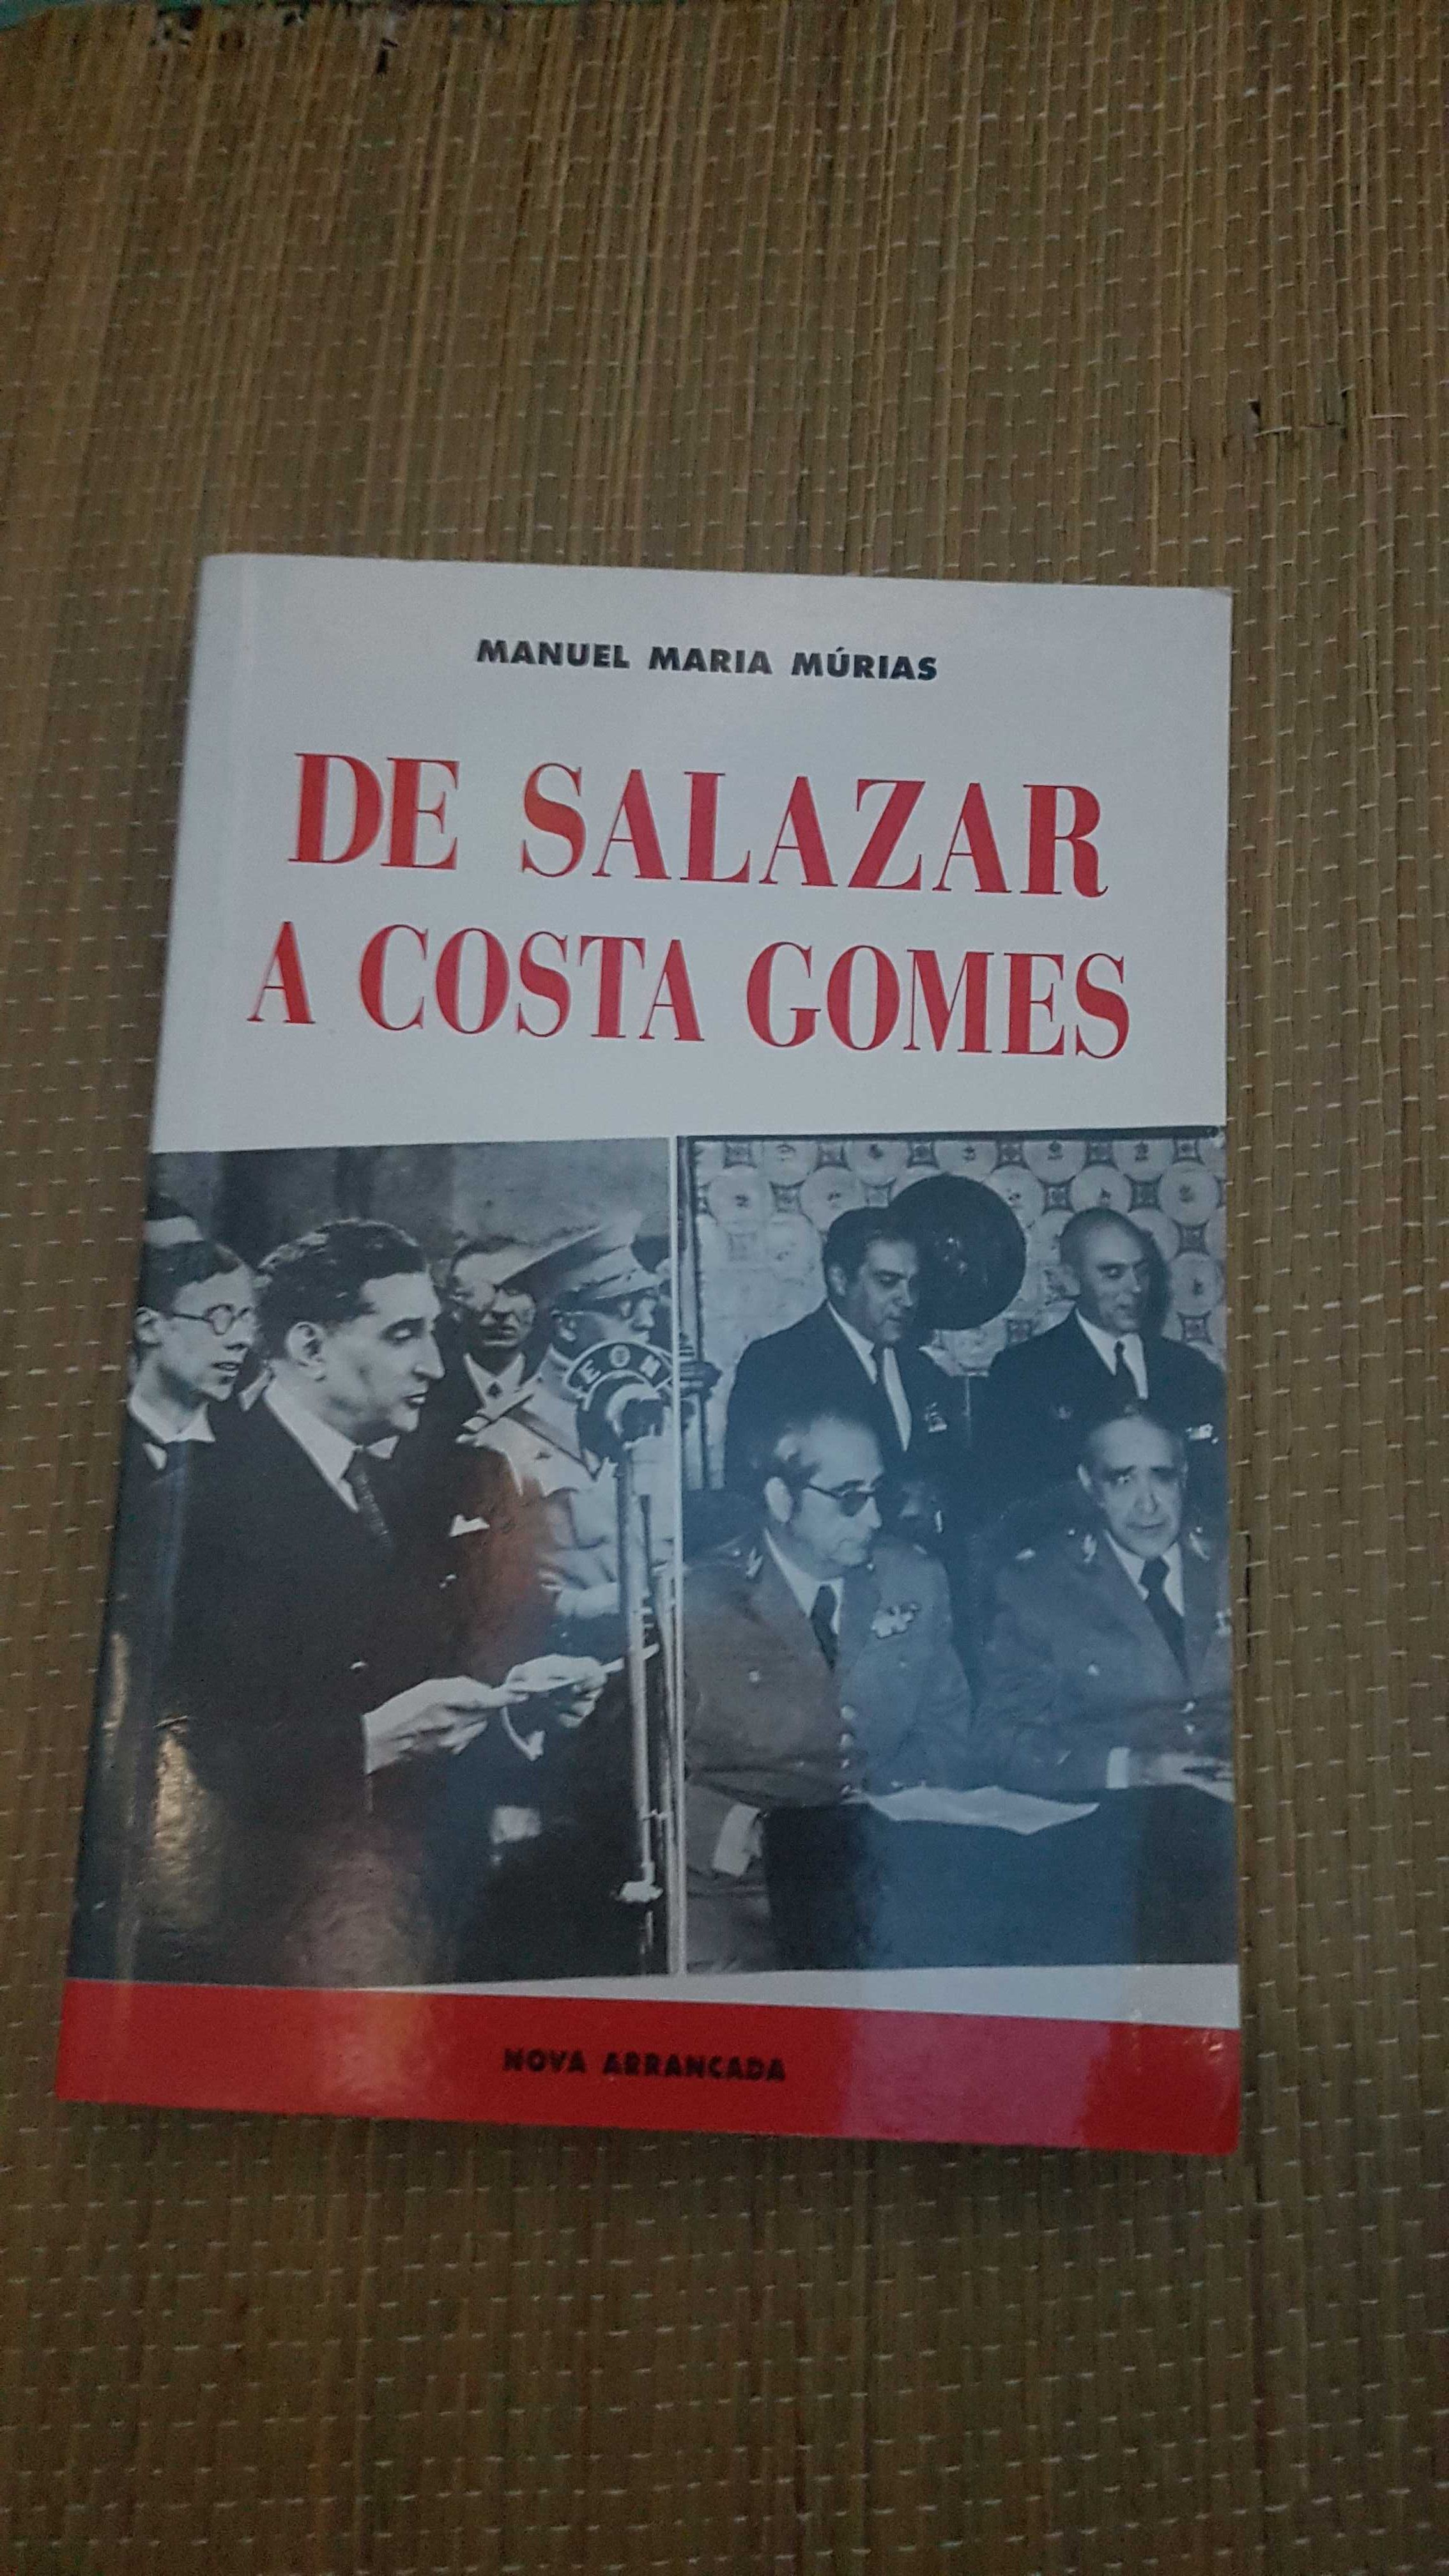 6 livros - Estado Novo, Salazar, Marcello Caetano, 25 abril